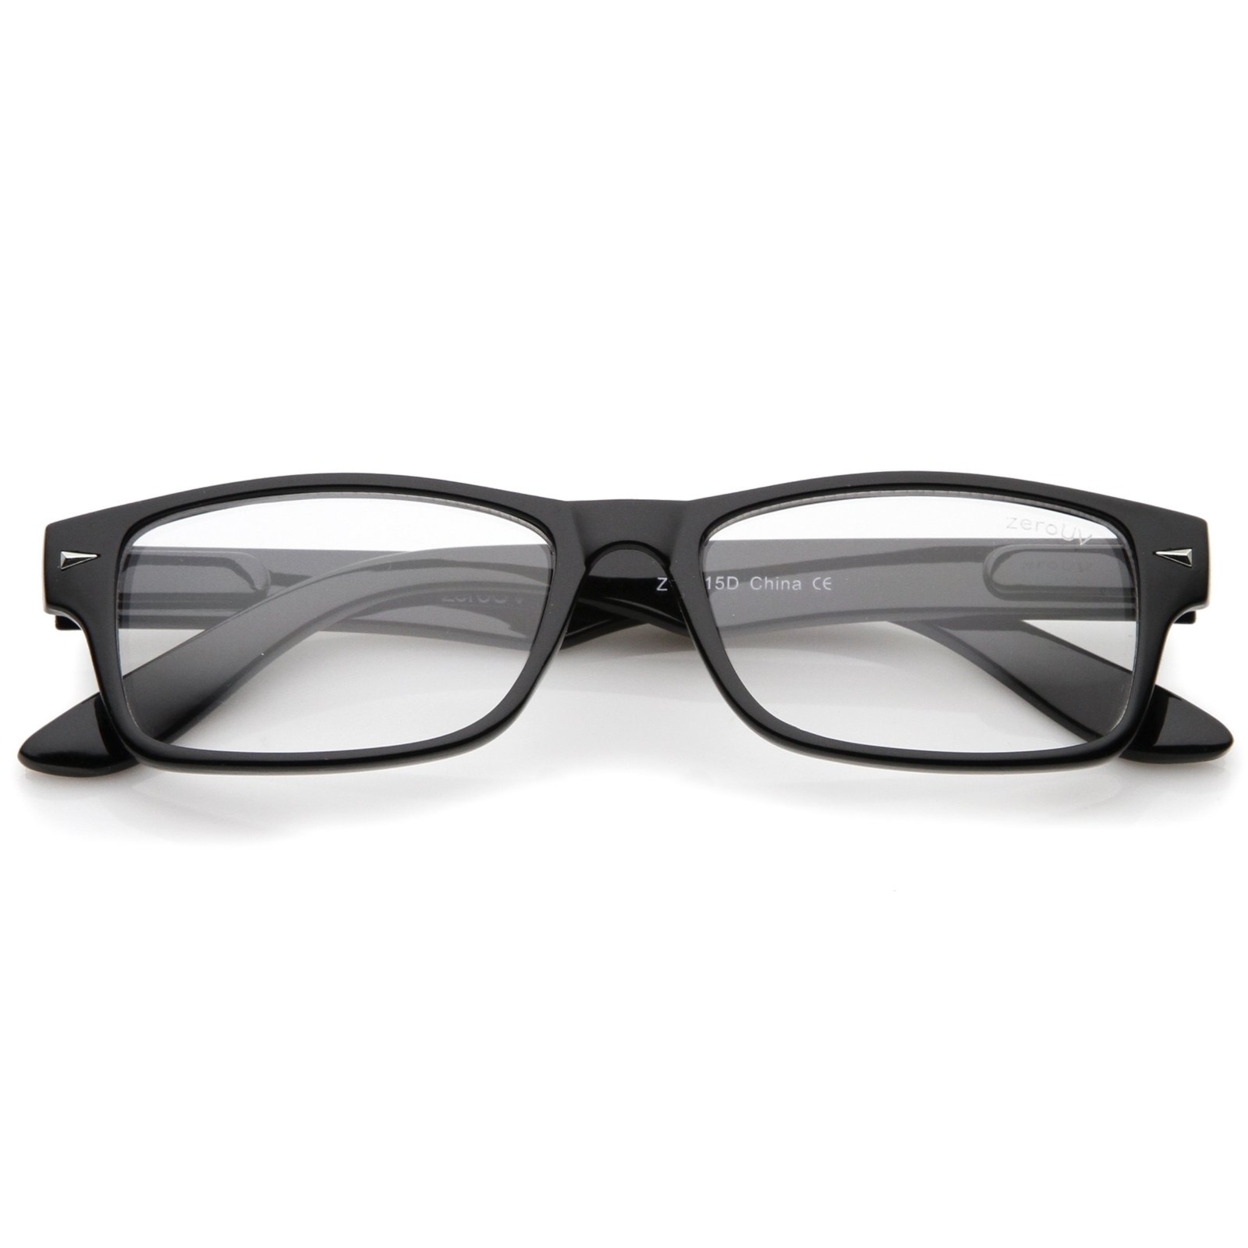 Casual Horn Rimmed Clear Lens Rectangular Glasses 51mm - 2-Pack , Black/Tortoise